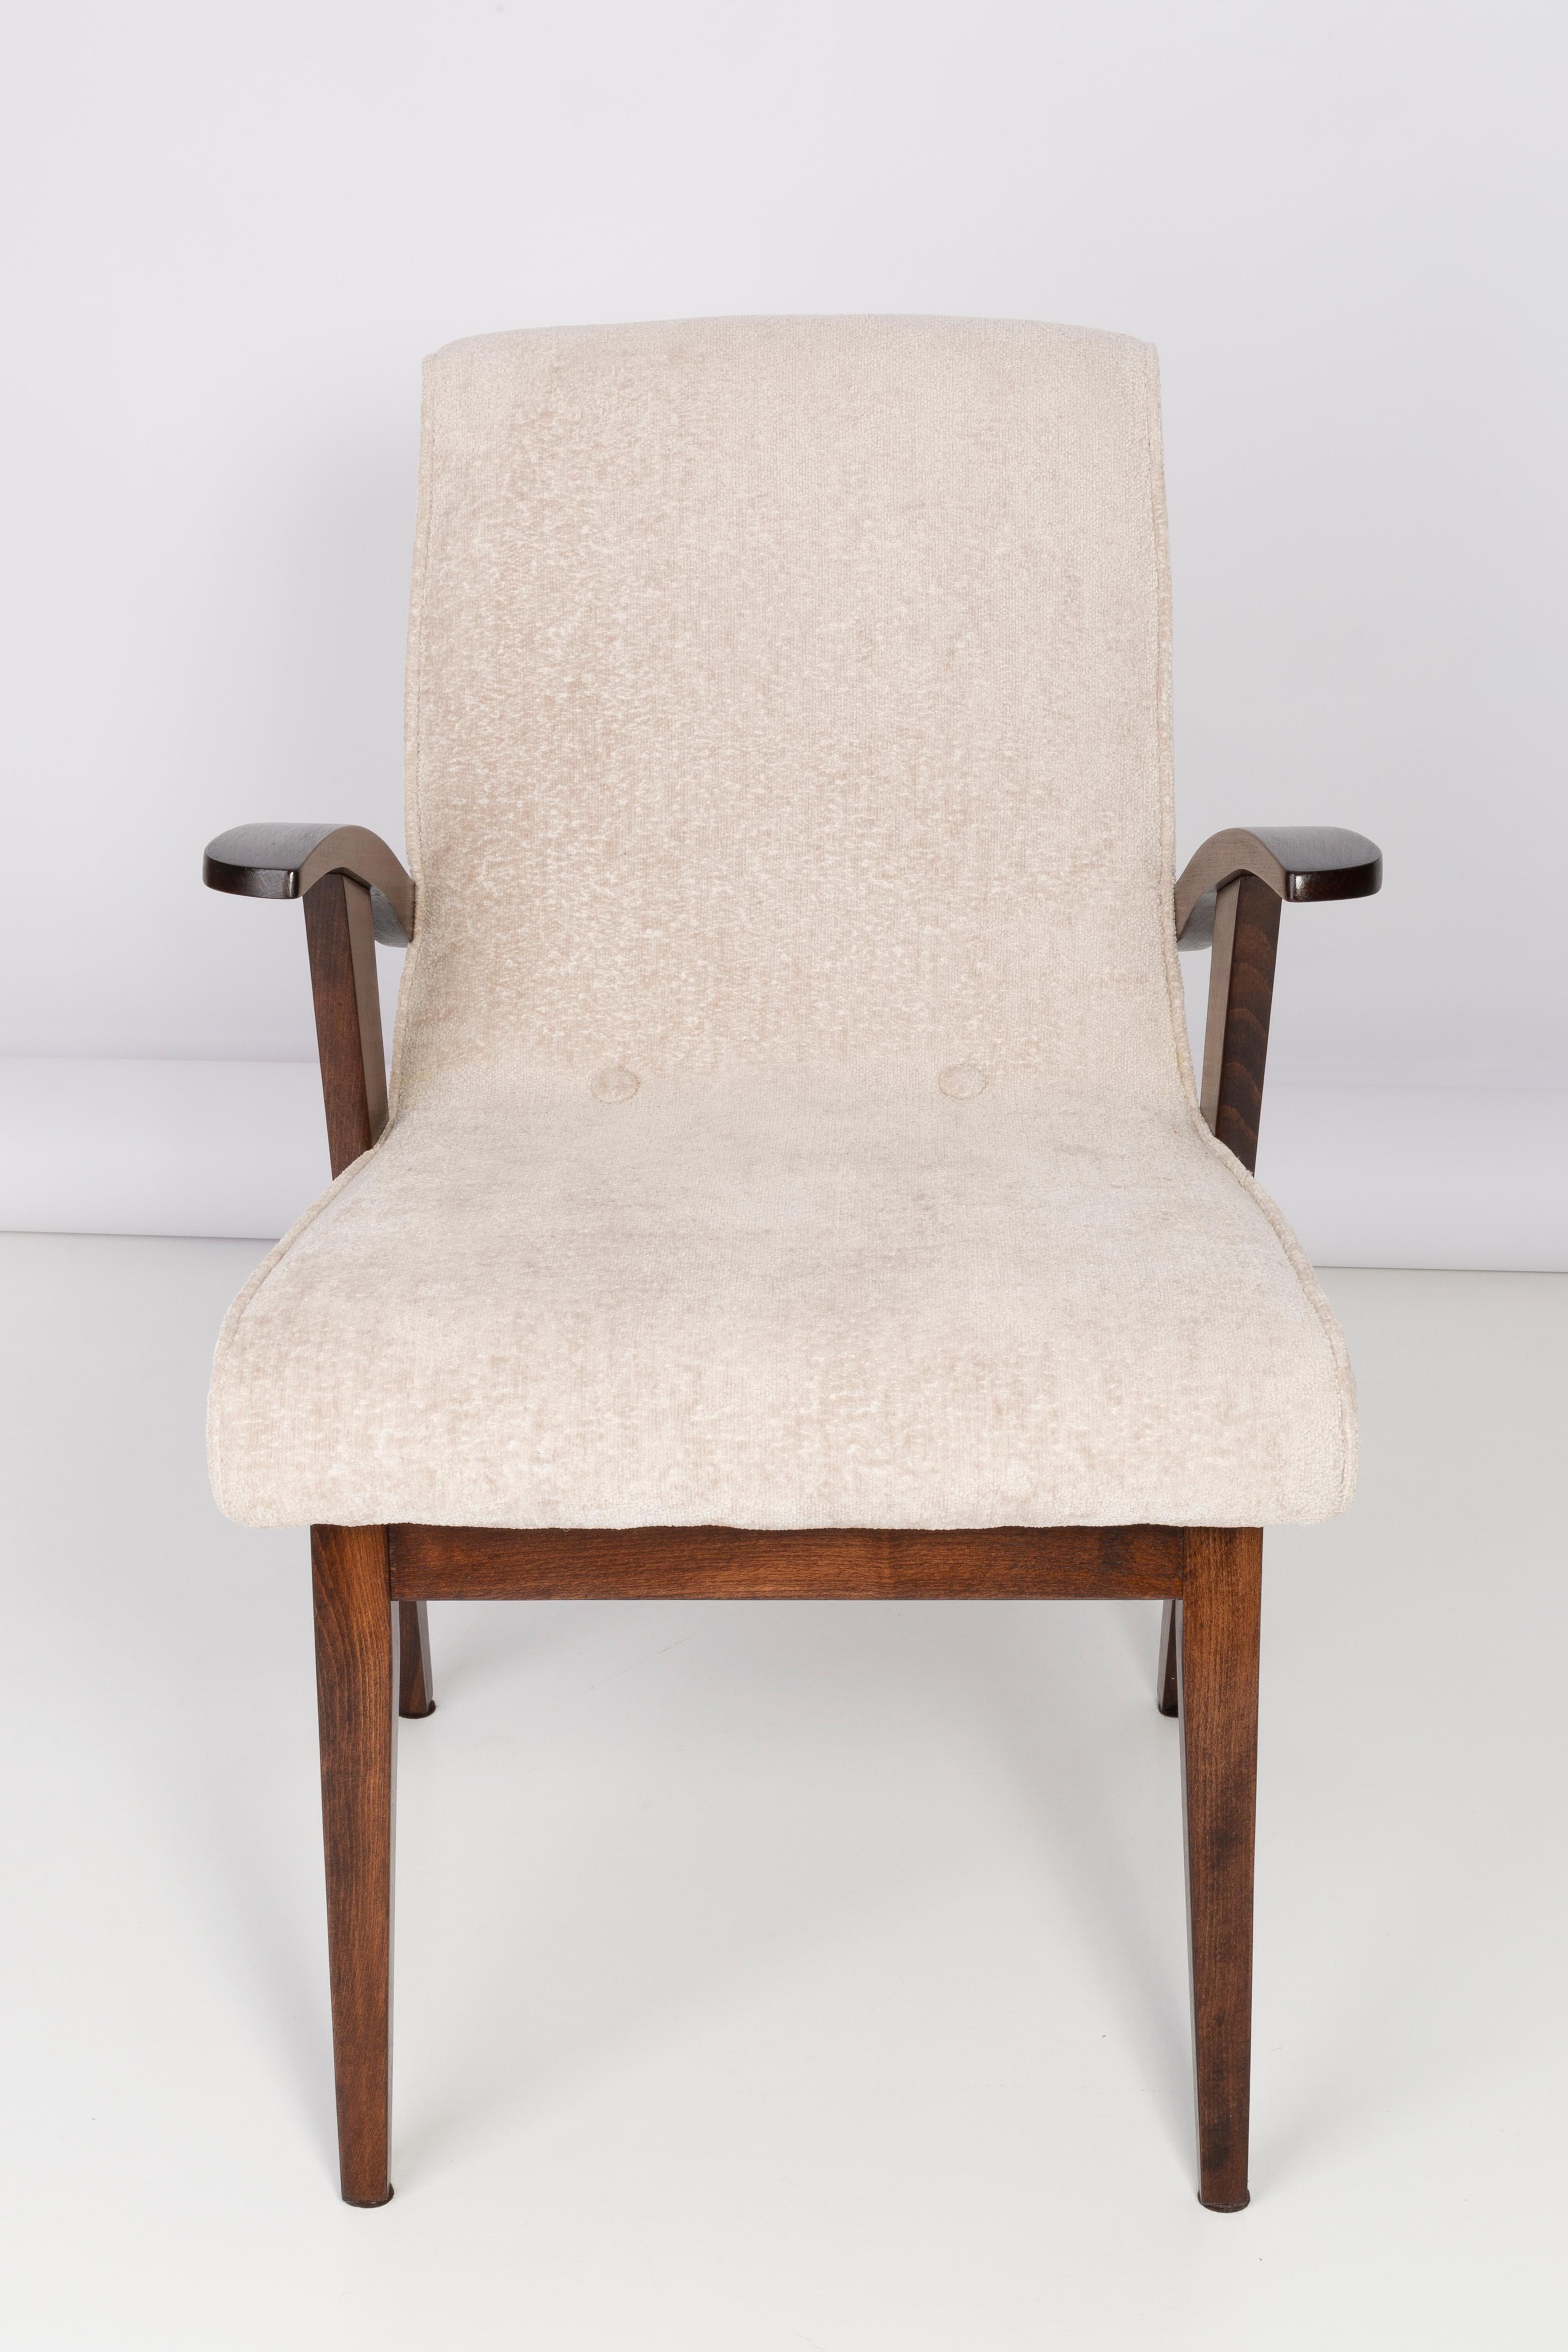 Von Mieczyslaw Puchala entworfene Sessel in einer Classic-Ausgabe. Mittelbraunes Holz kombiniert mit einem hellen cremefarbenen Bouclé-Stoff verleiht ihm Eleganz und Noblesse. Die Stühle wurden einer kompletten Tischler- und Polstermöbelrenovierung